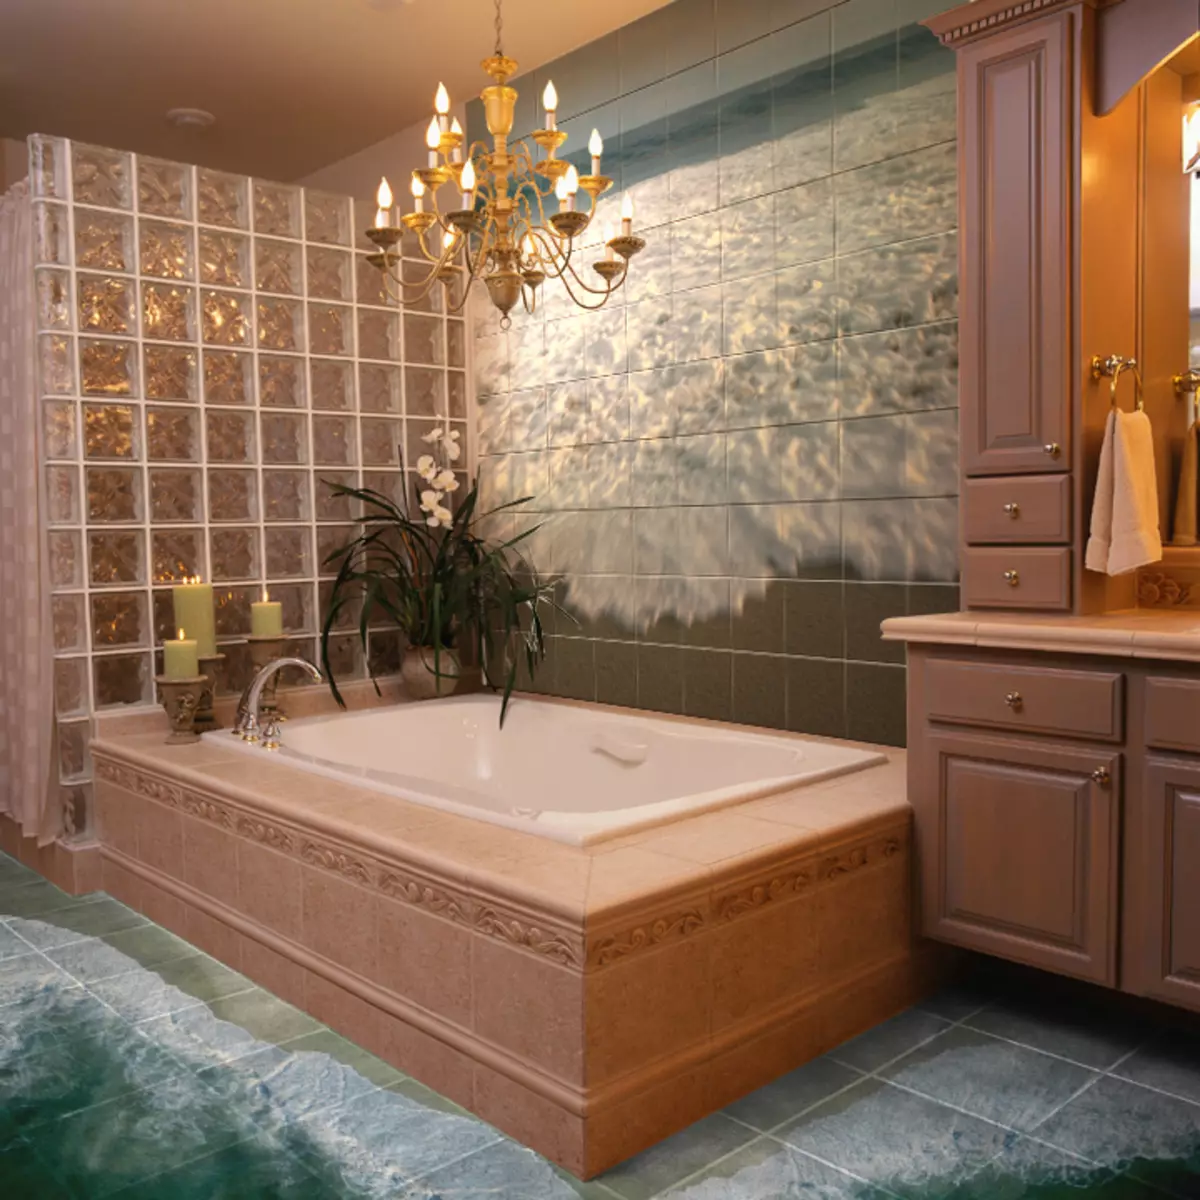 Красивая плитка на стены. Красивый кафель в ванную комнату. Ванная отделанная плиткой. Красивые Ванные комнаты. Красивая плитка для ванной.